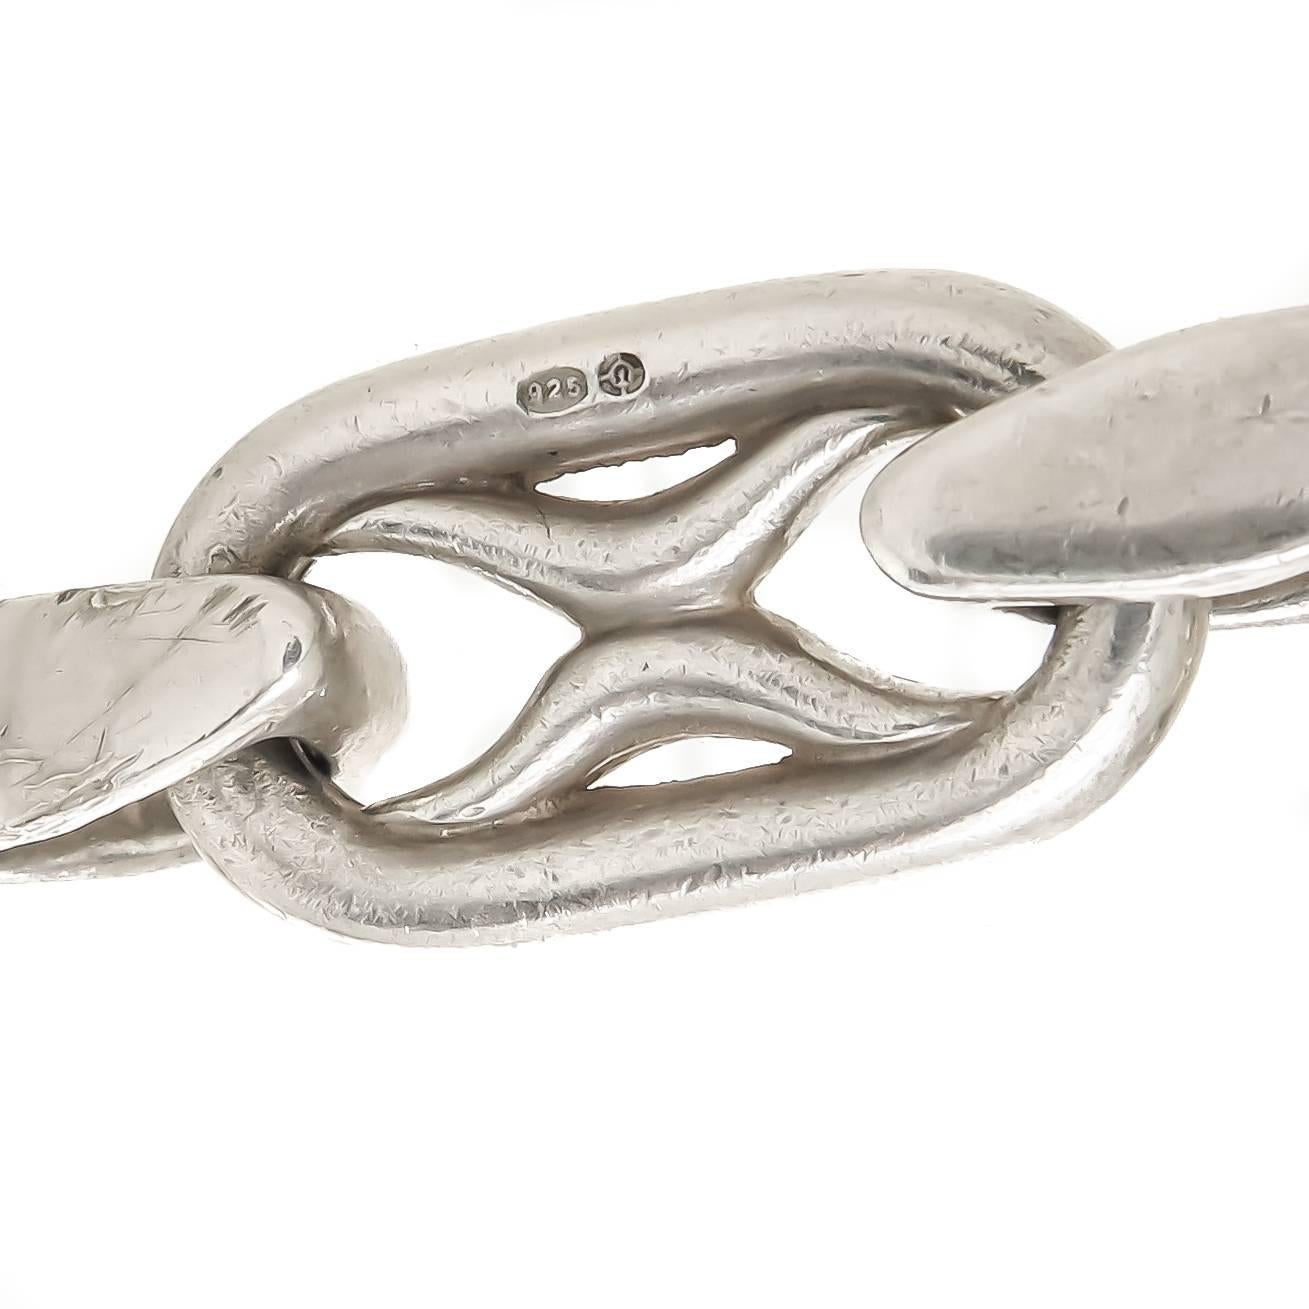 hermes silver link bracelet